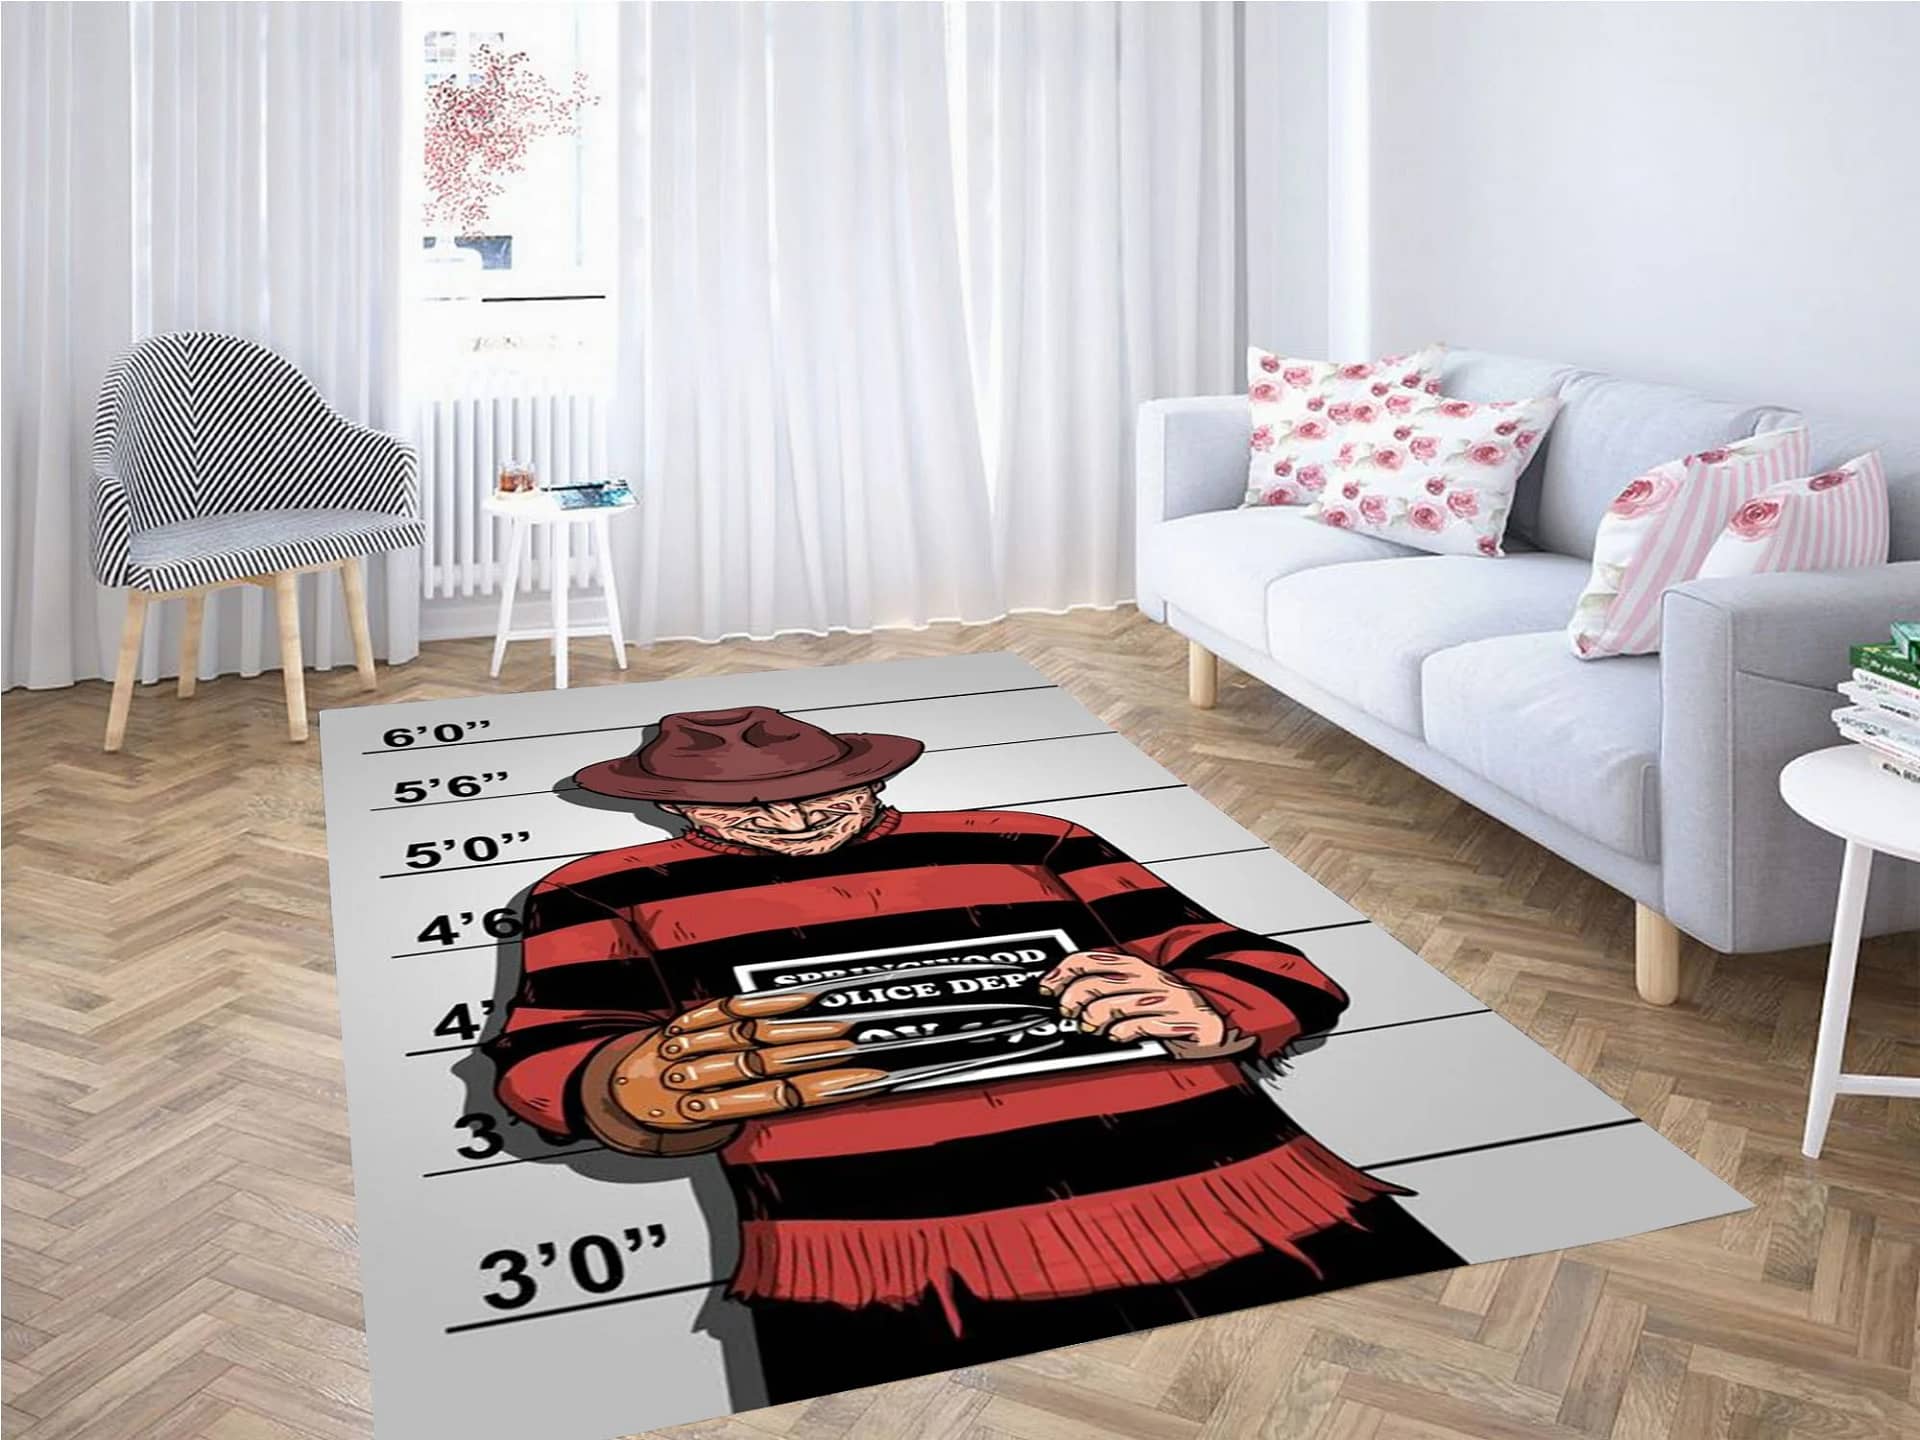 Freddy Krueger Mugshot Carpet Rug